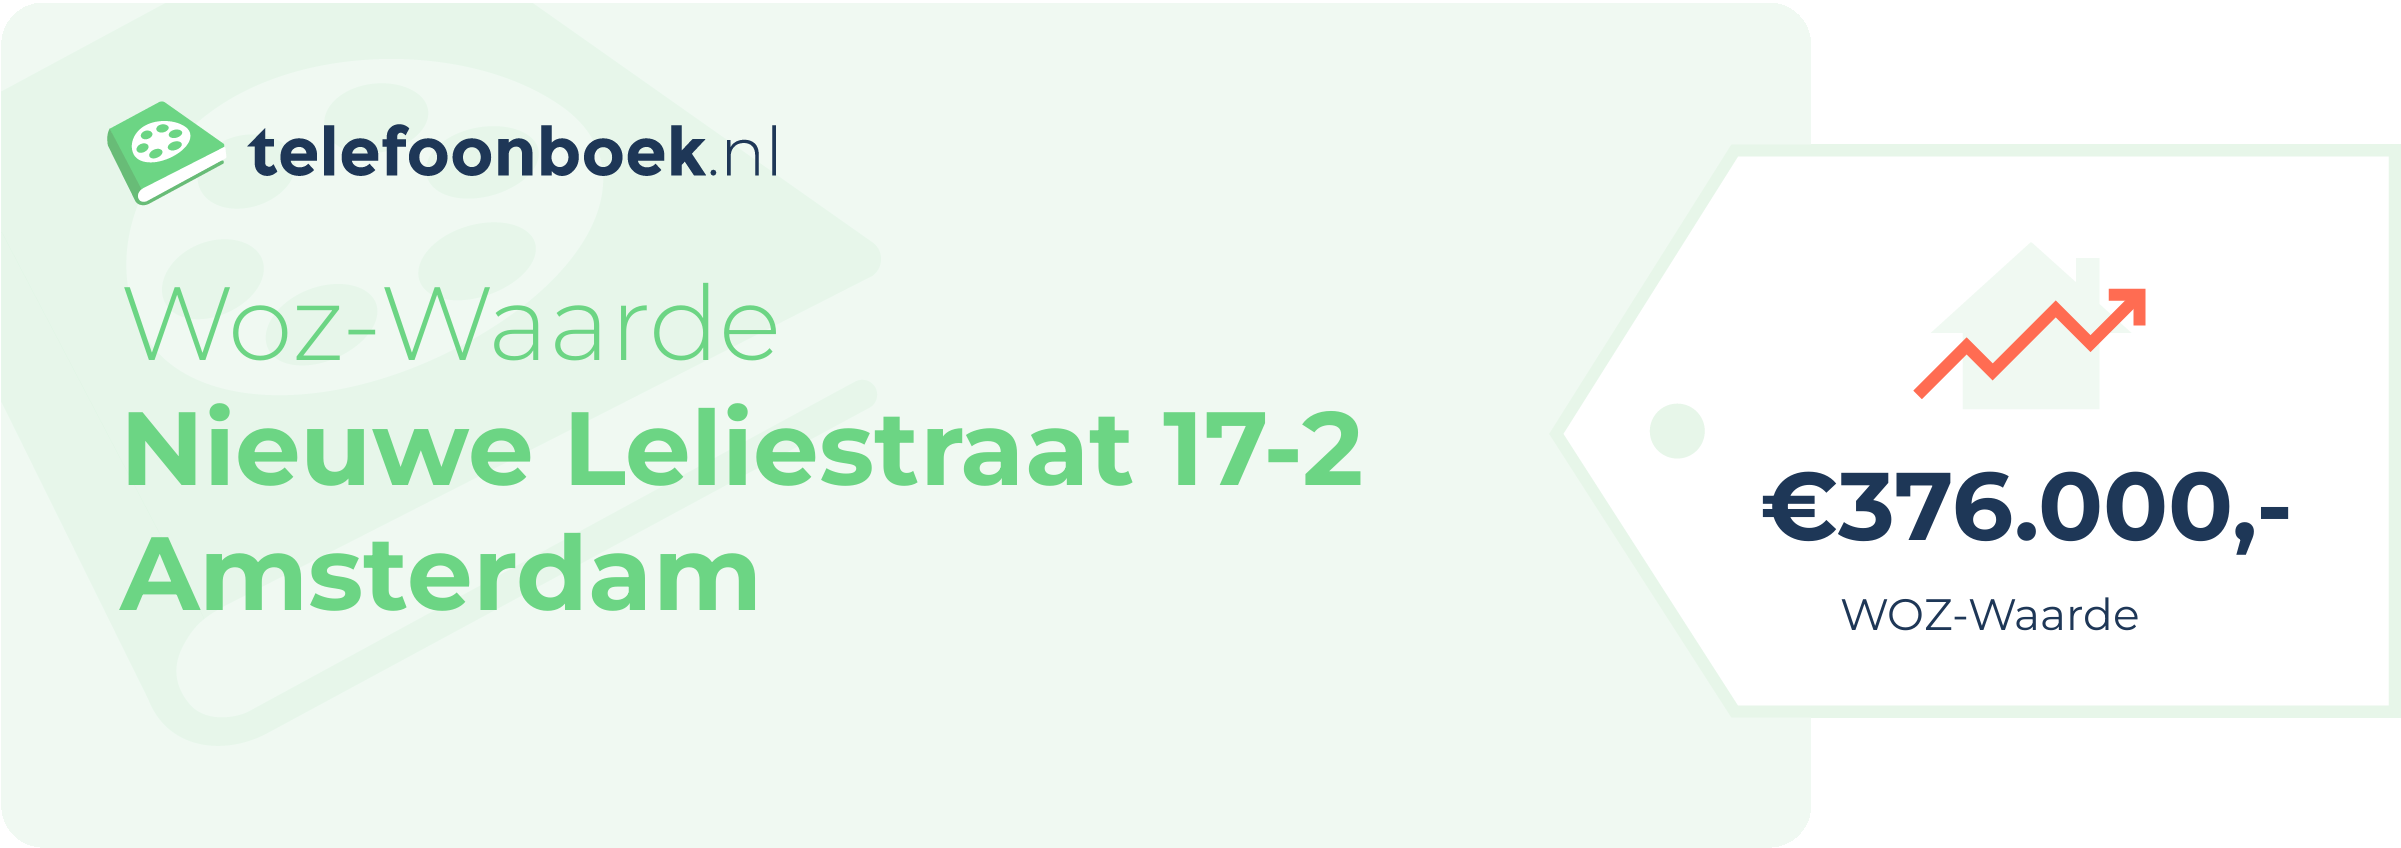 WOZ-waarde Nieuwe Leliestraat 17-2 Amsterdam